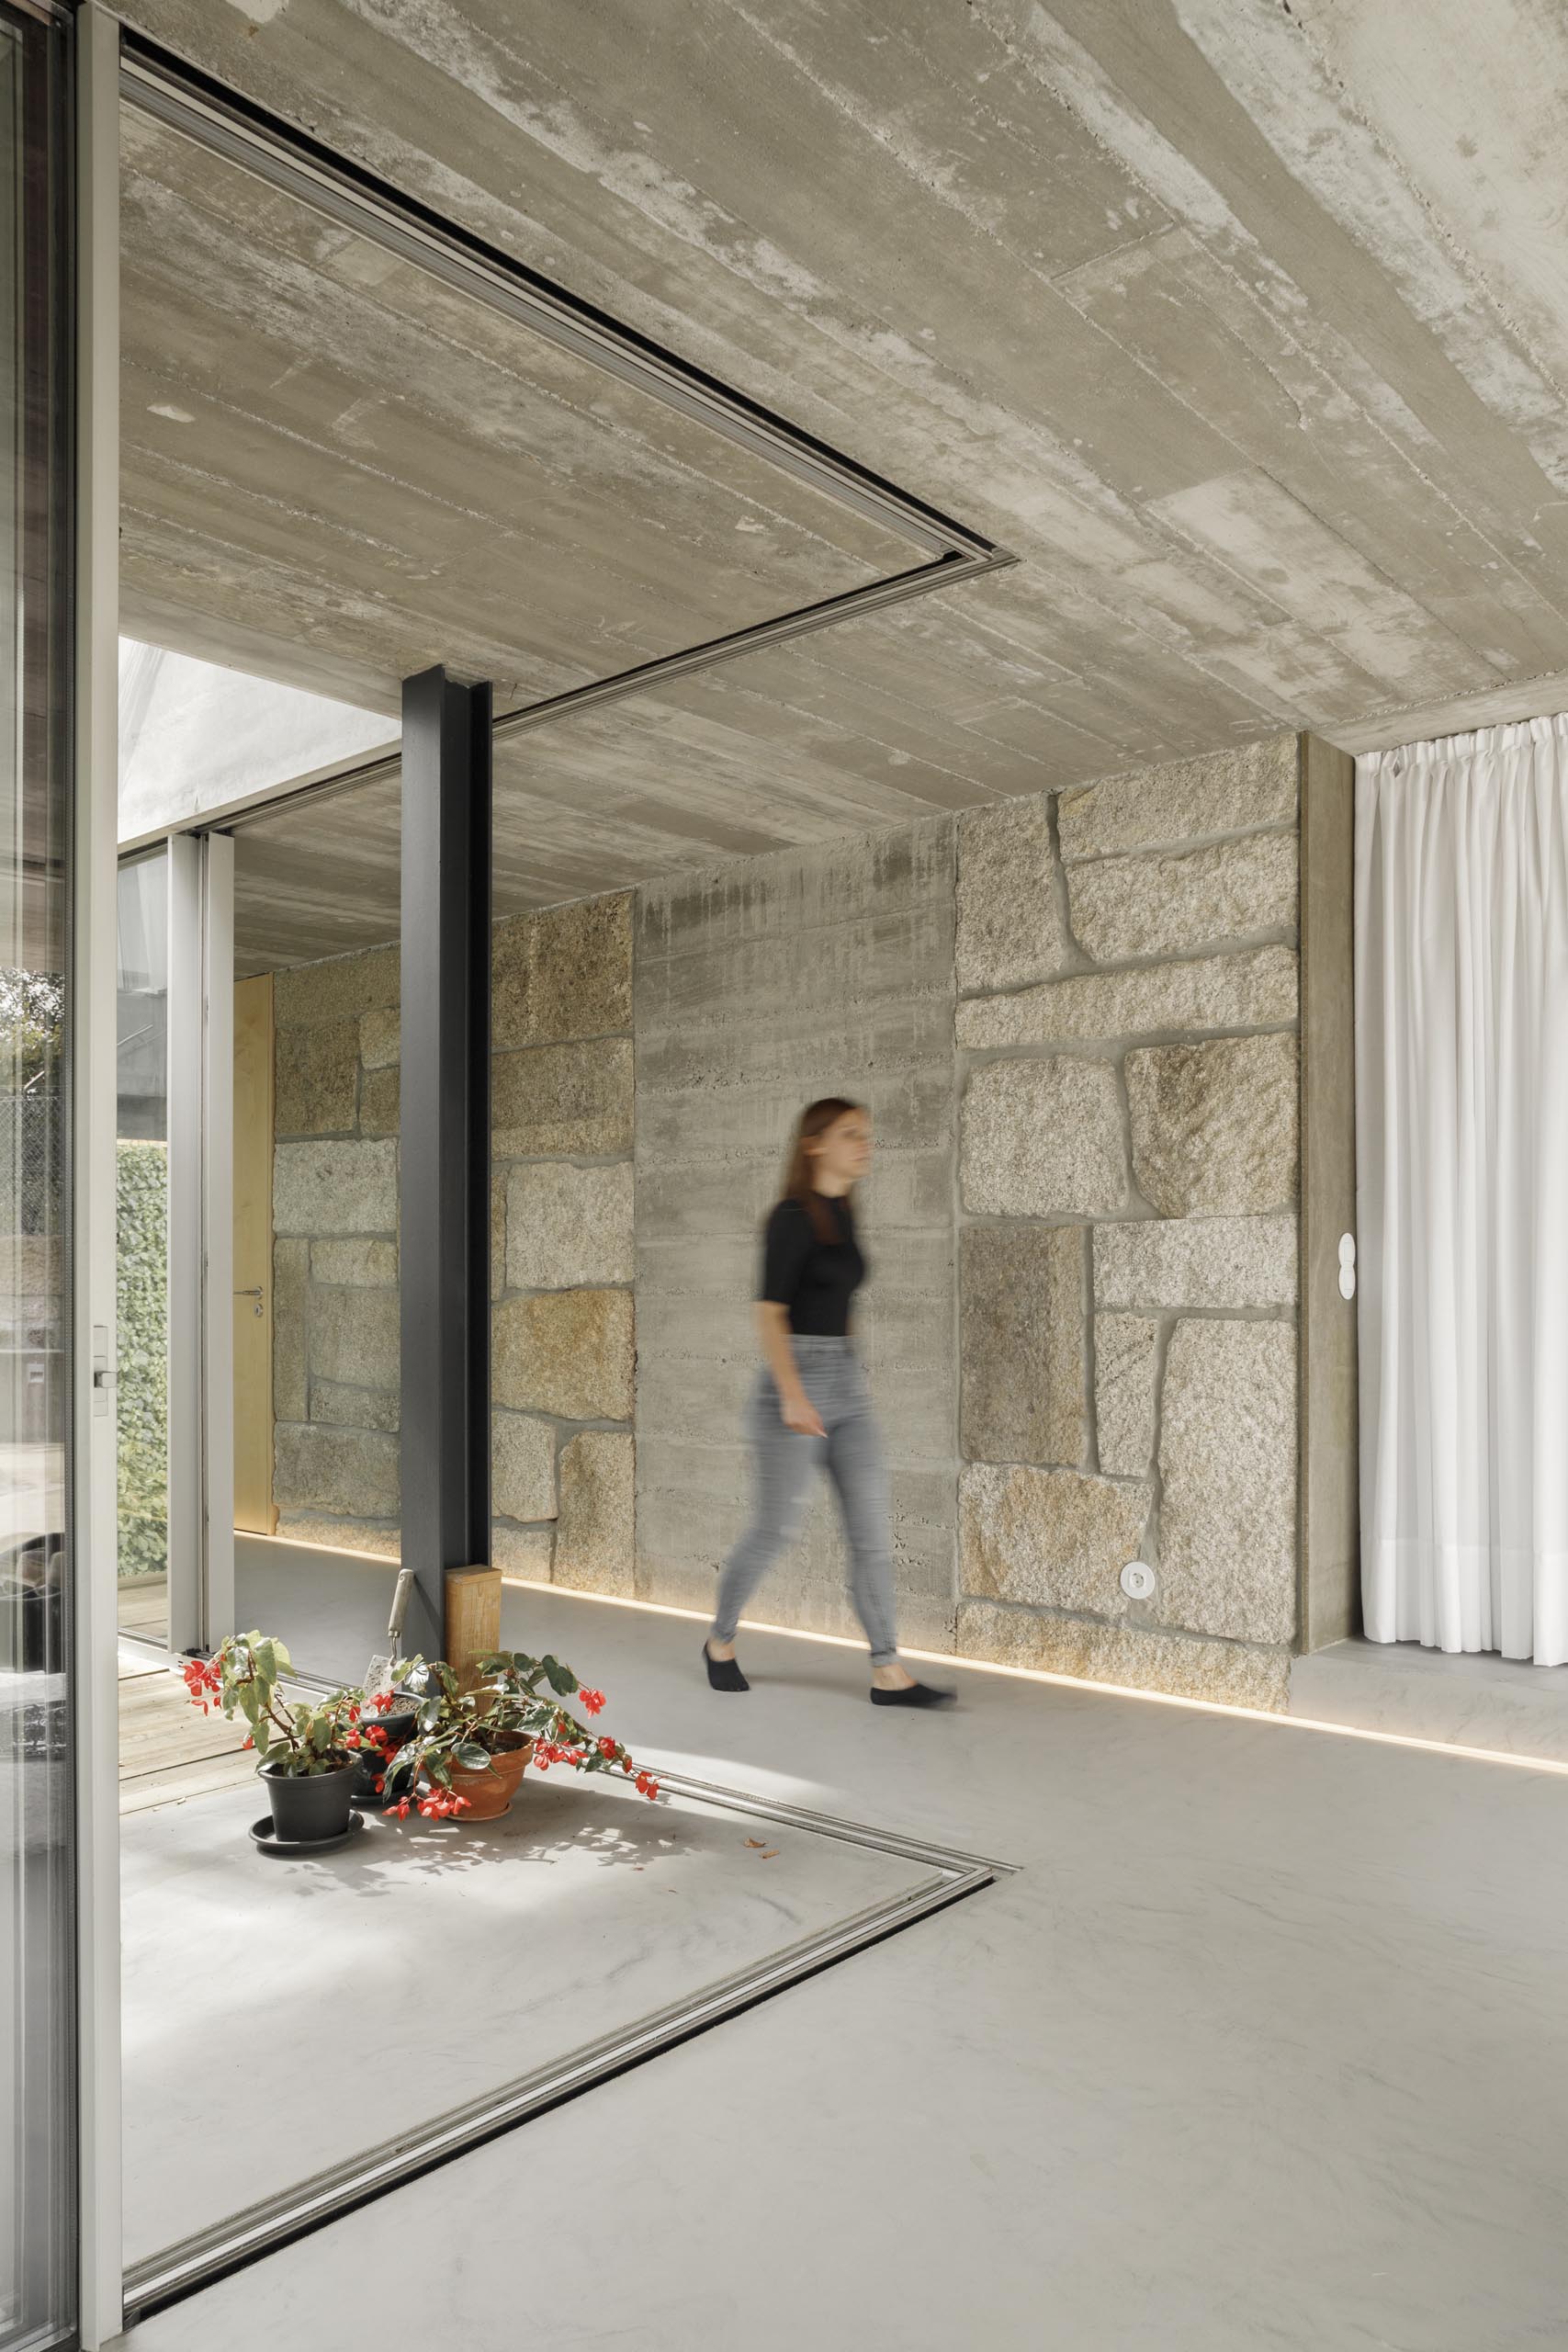 Bằng cách sử dụng các dải đèn LED chiếu sáng, các bức tường bằng đá, bê tông và gỗ trong ngôi nhà hiện đại này có thể được thể hiện một cách tinh tế.